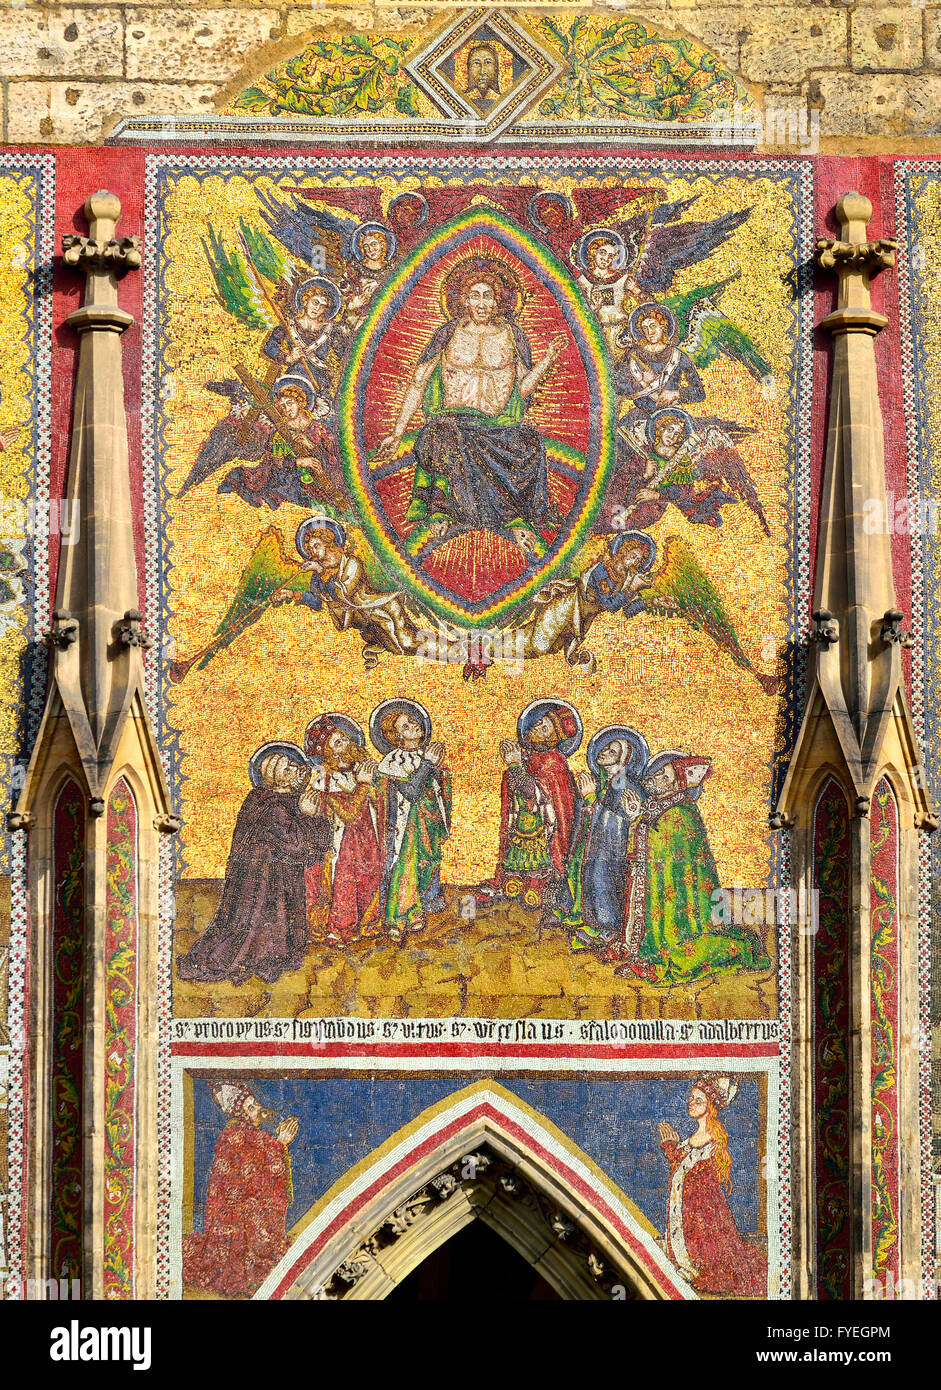 Prag, Tschechische Republik. St-Veits-Dom. 82 m ² Mosaik zeigt das jüngste Gericht. Mittelteil: Christ in der Majestät, Engel... Stockfoto